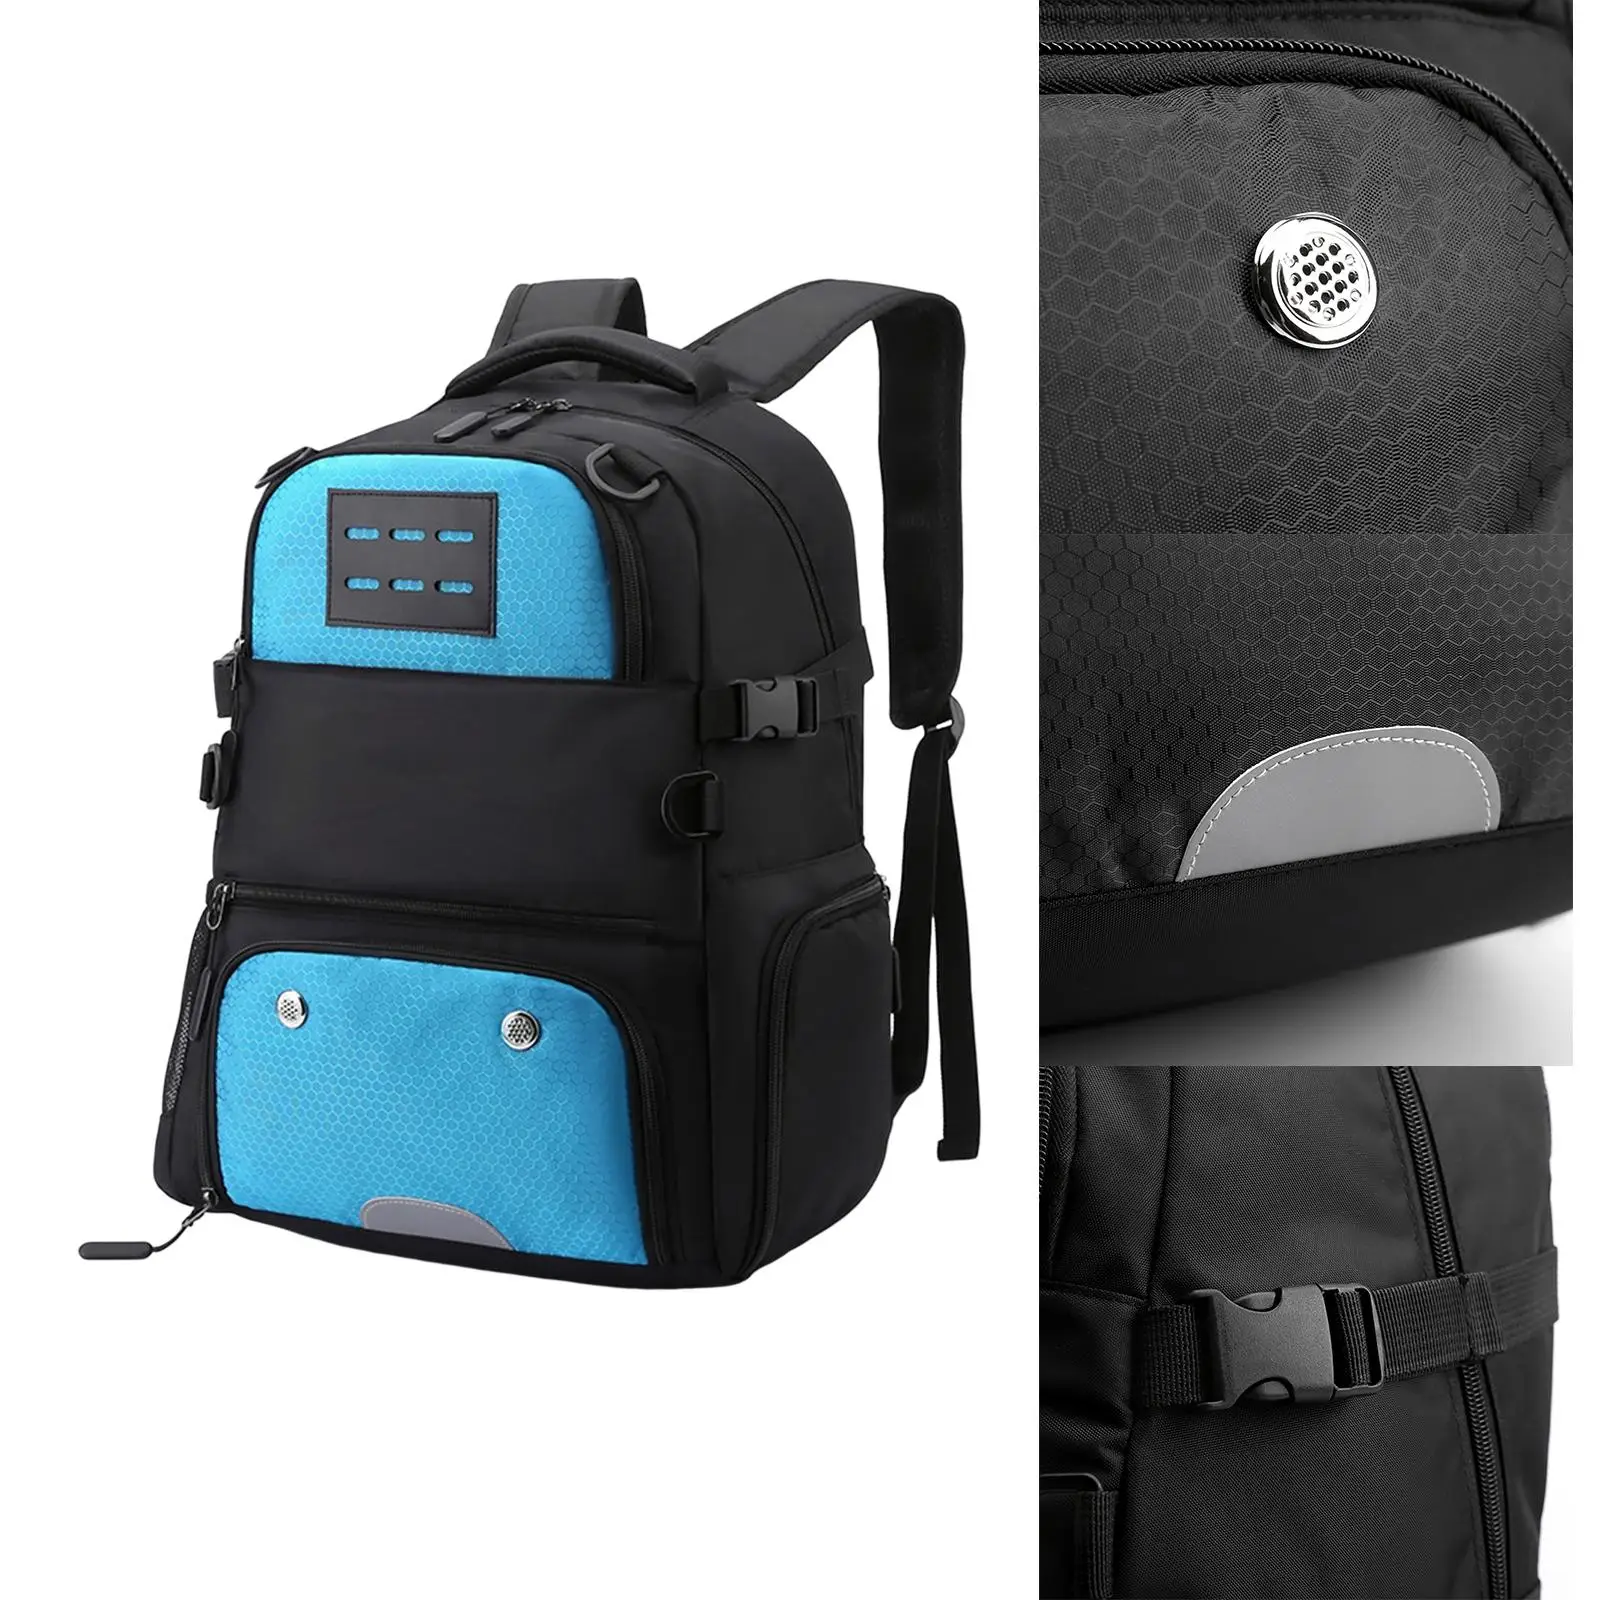 Basketball Football Backpack Pocket Rucksack Adjustable Laptop Bag Soccer Bag for Volleyball Gym Sports Boys Girls